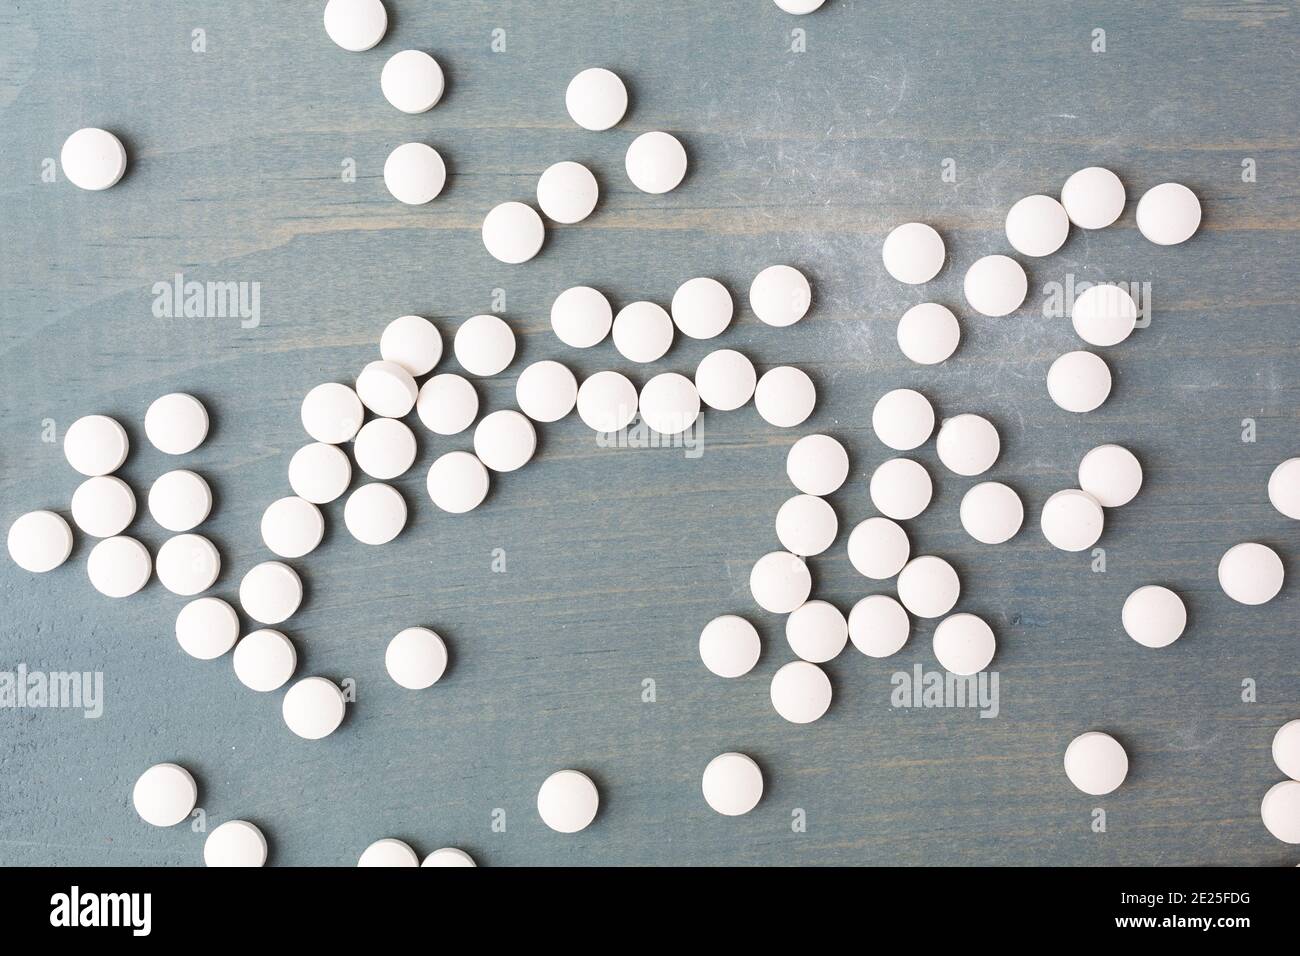 Draufsicht auf mehrere Vitamin D Tabletten auf einer blau lackierten verblassten Tischplatte. Stockfoto